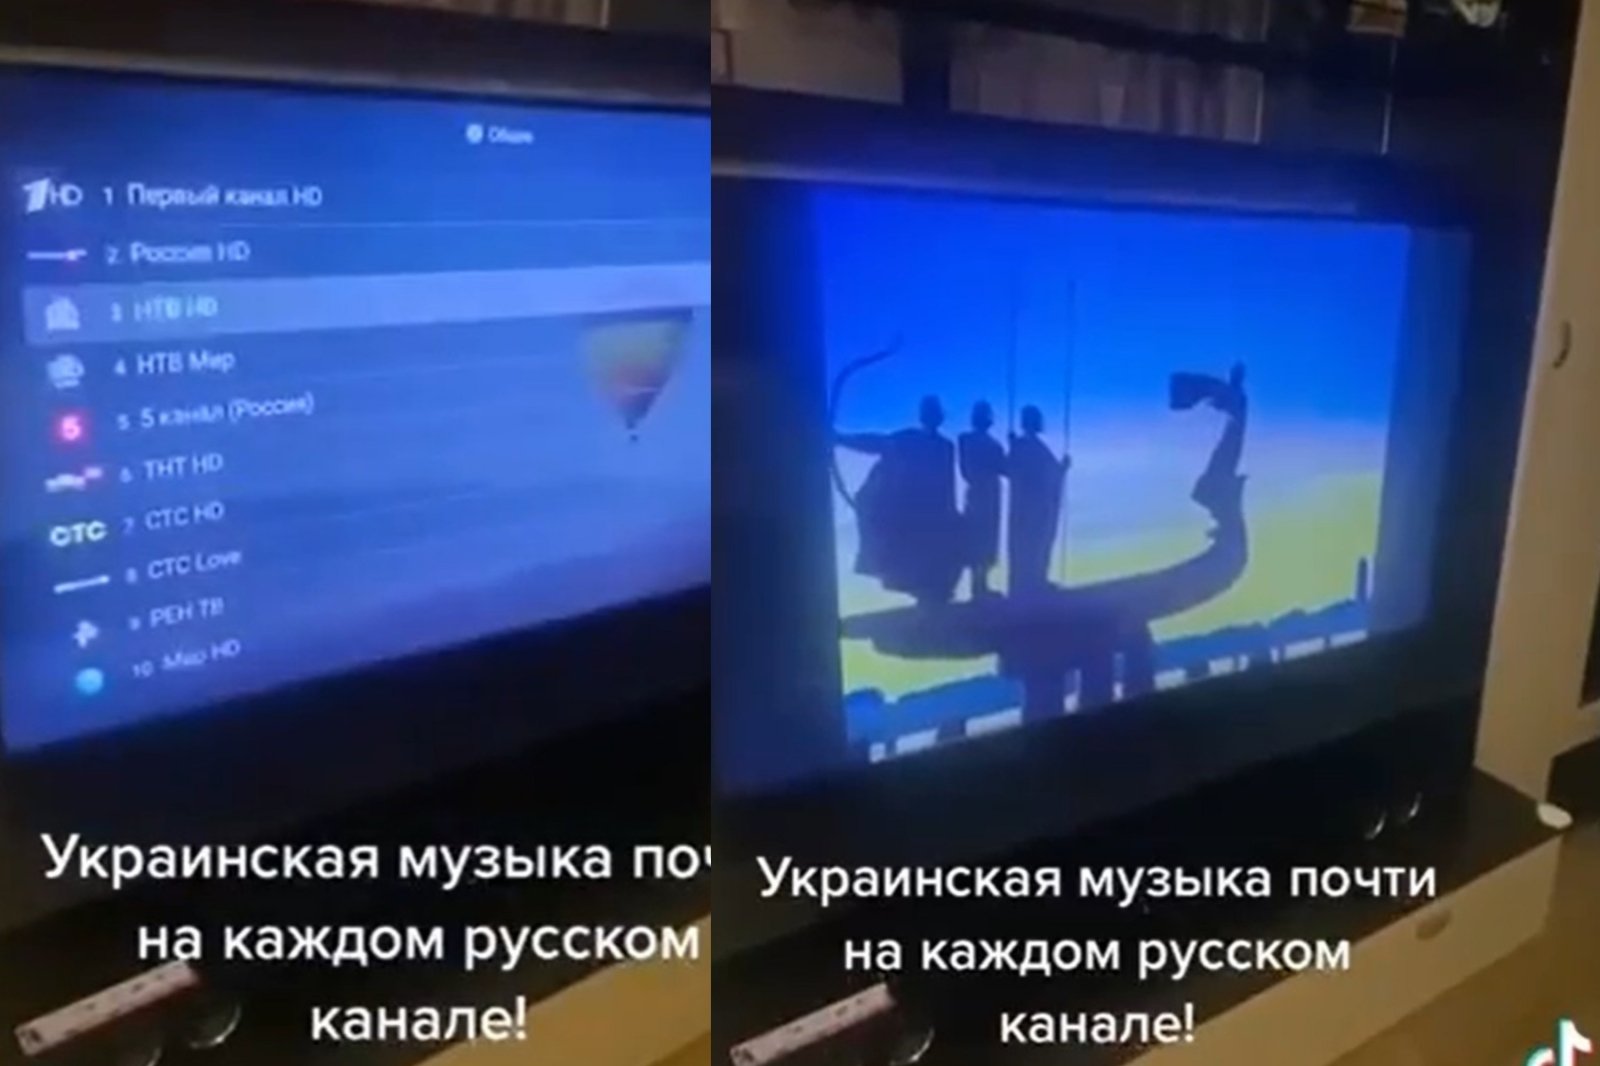 Kyiv Independent: Anonymous hevder hackere slo ned på russiske TV-propagandakanaler